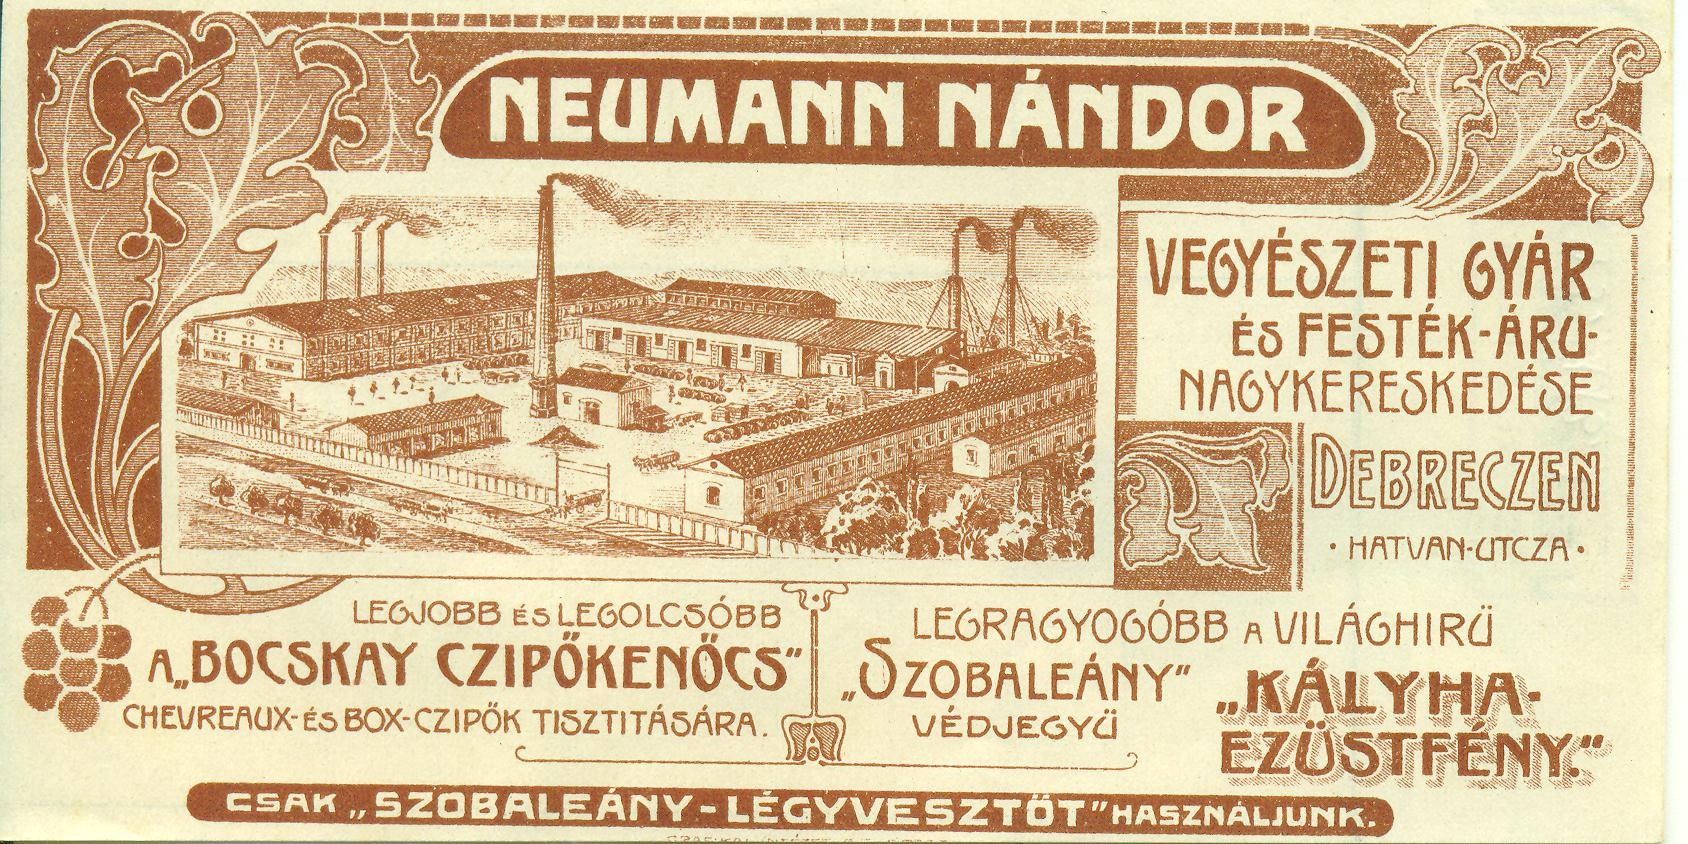 Neumann Nándor Vegyészeti Gyár és Festék-áru Nagykereskedése (Magyar Kereskedelmi és Vendéglátóipari Múzeum CC BY-NC-SA)